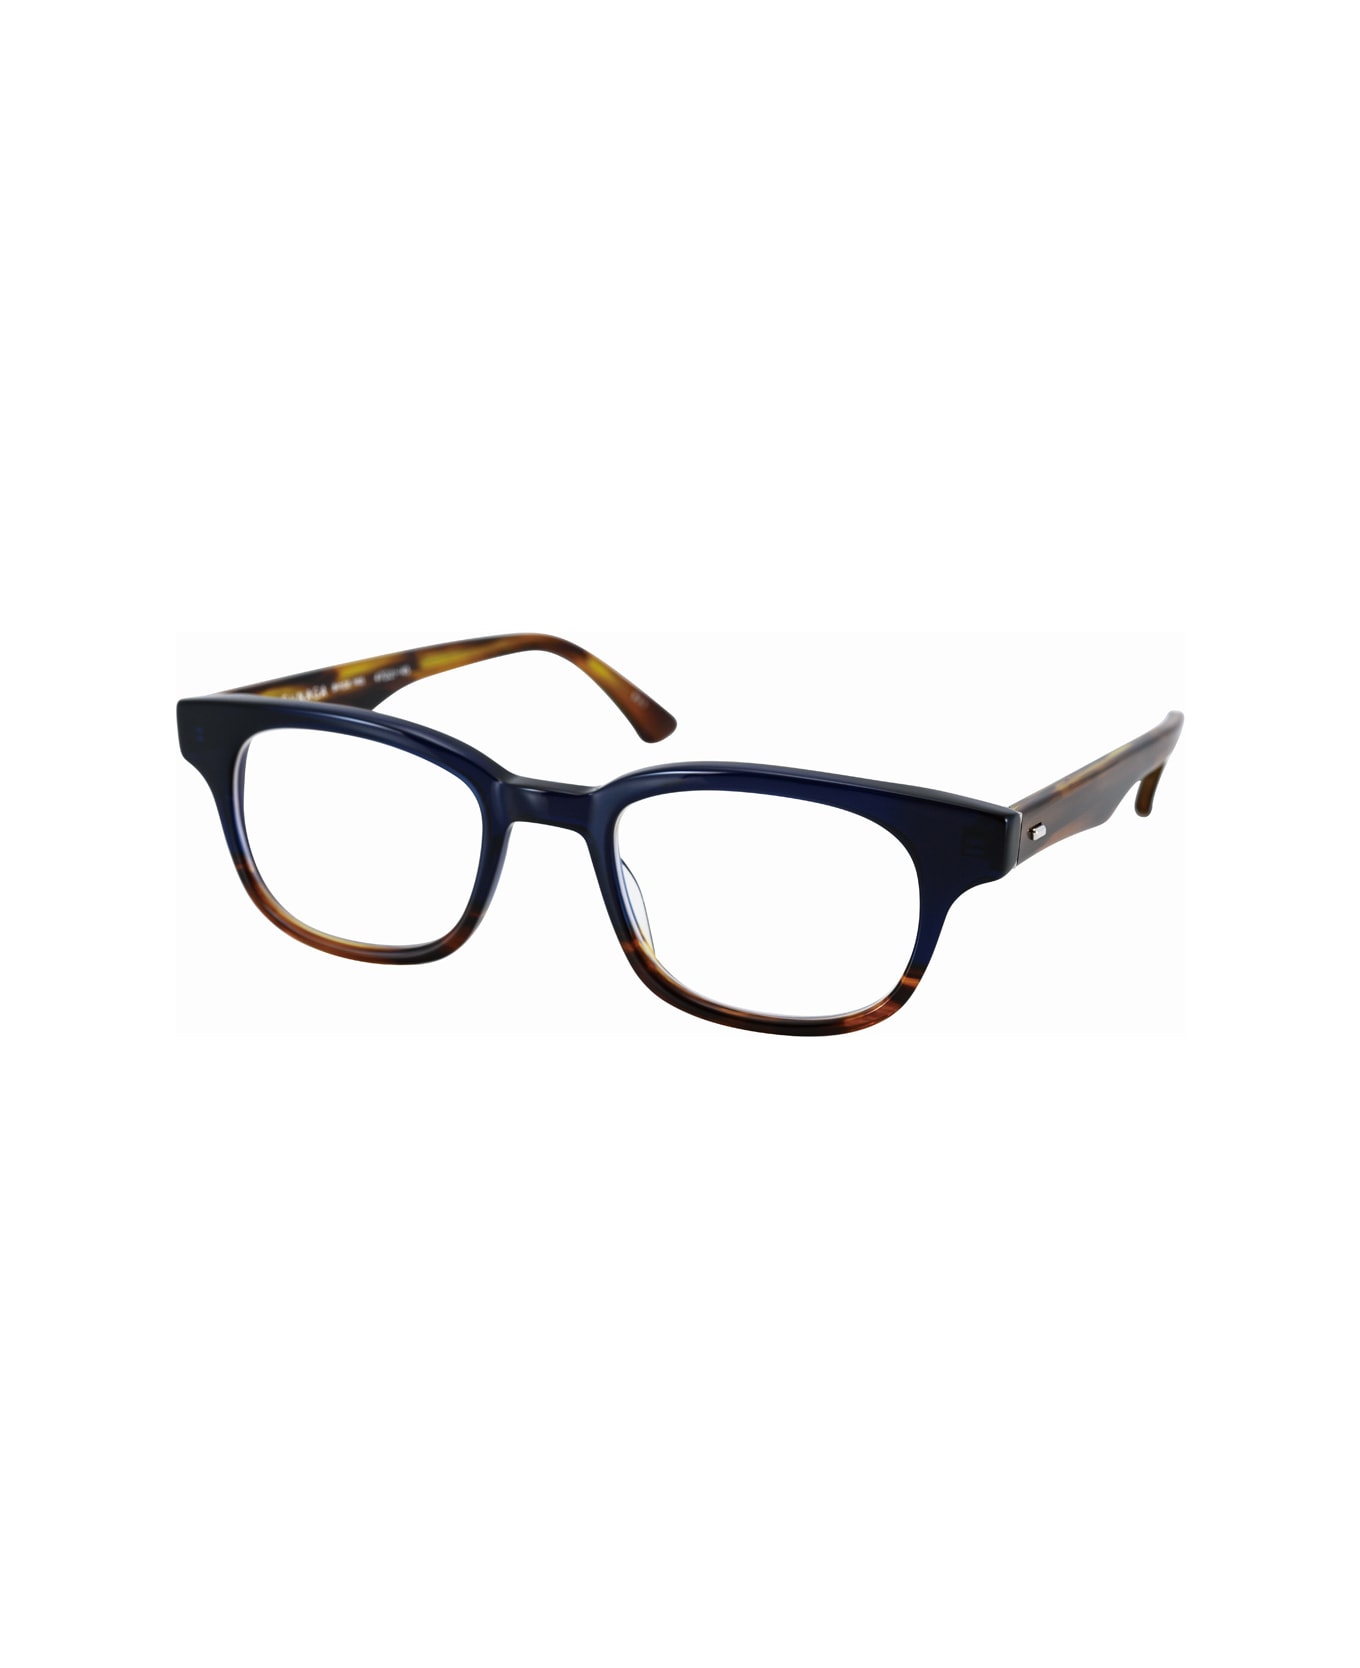 Masunaga Kk 81u Glasses - Blu